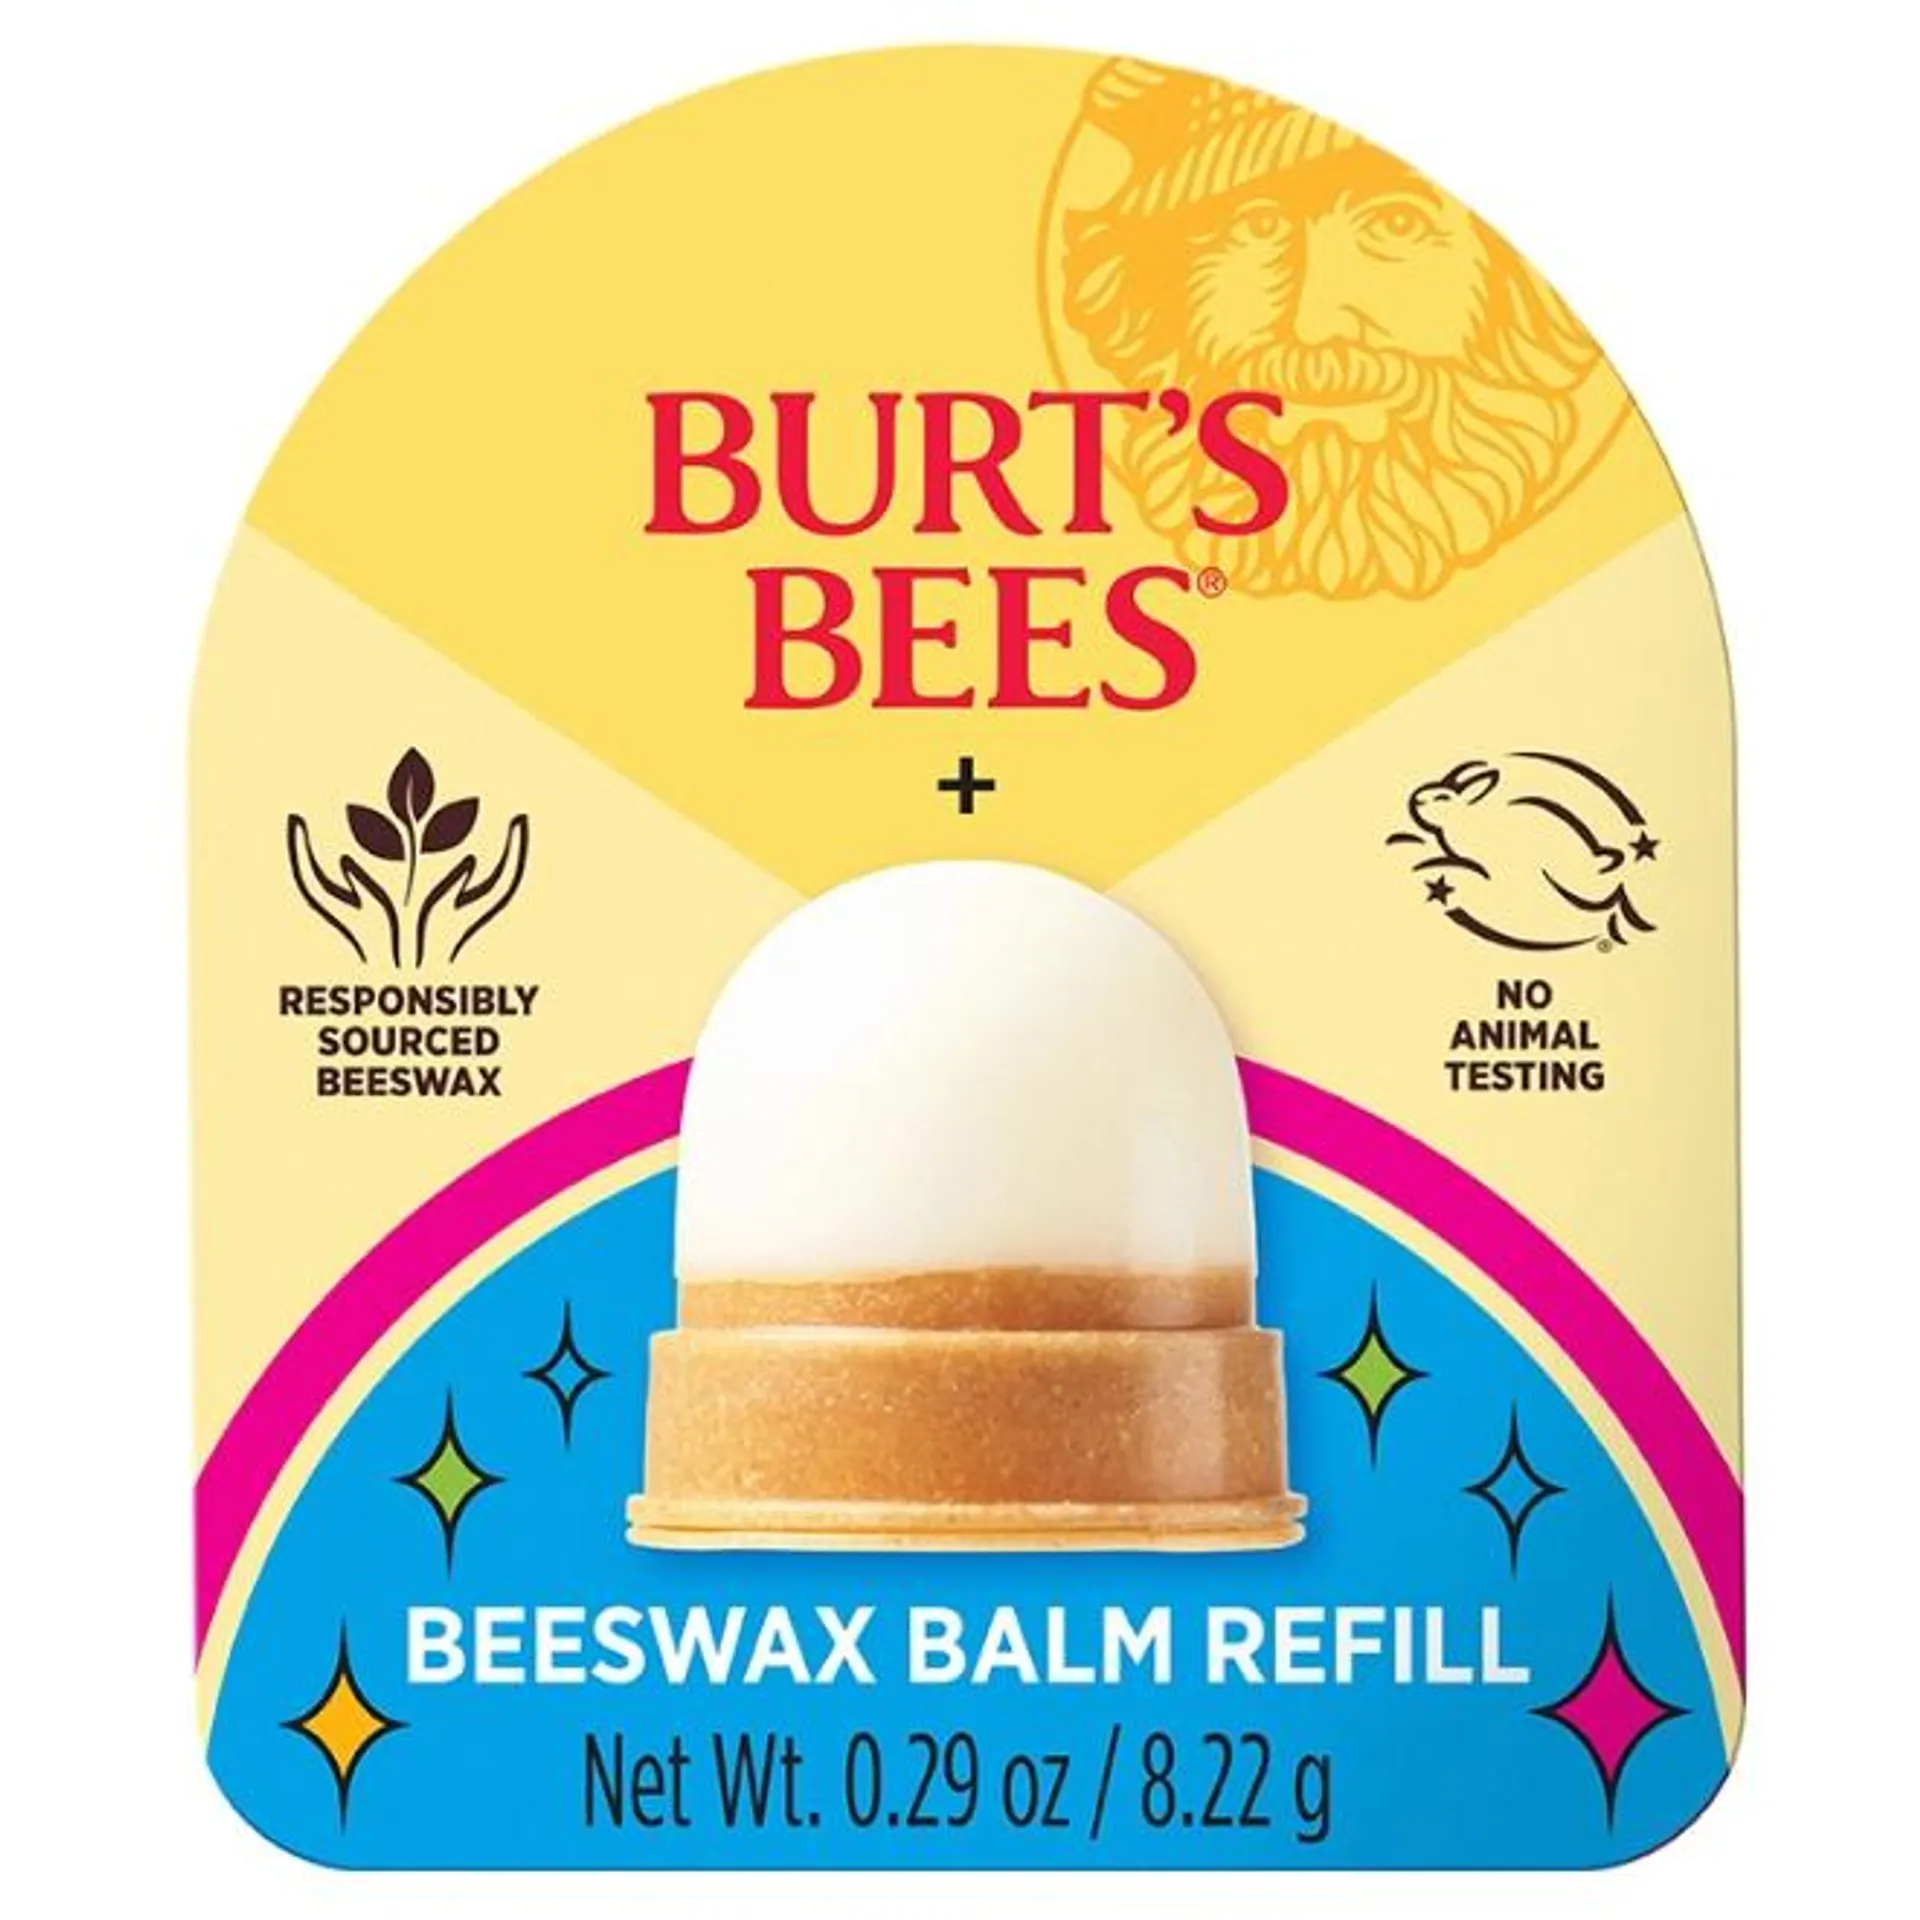 Burt’s Bees x Above & Beyond Beeswax Lip Balm Refill, 1-Pack